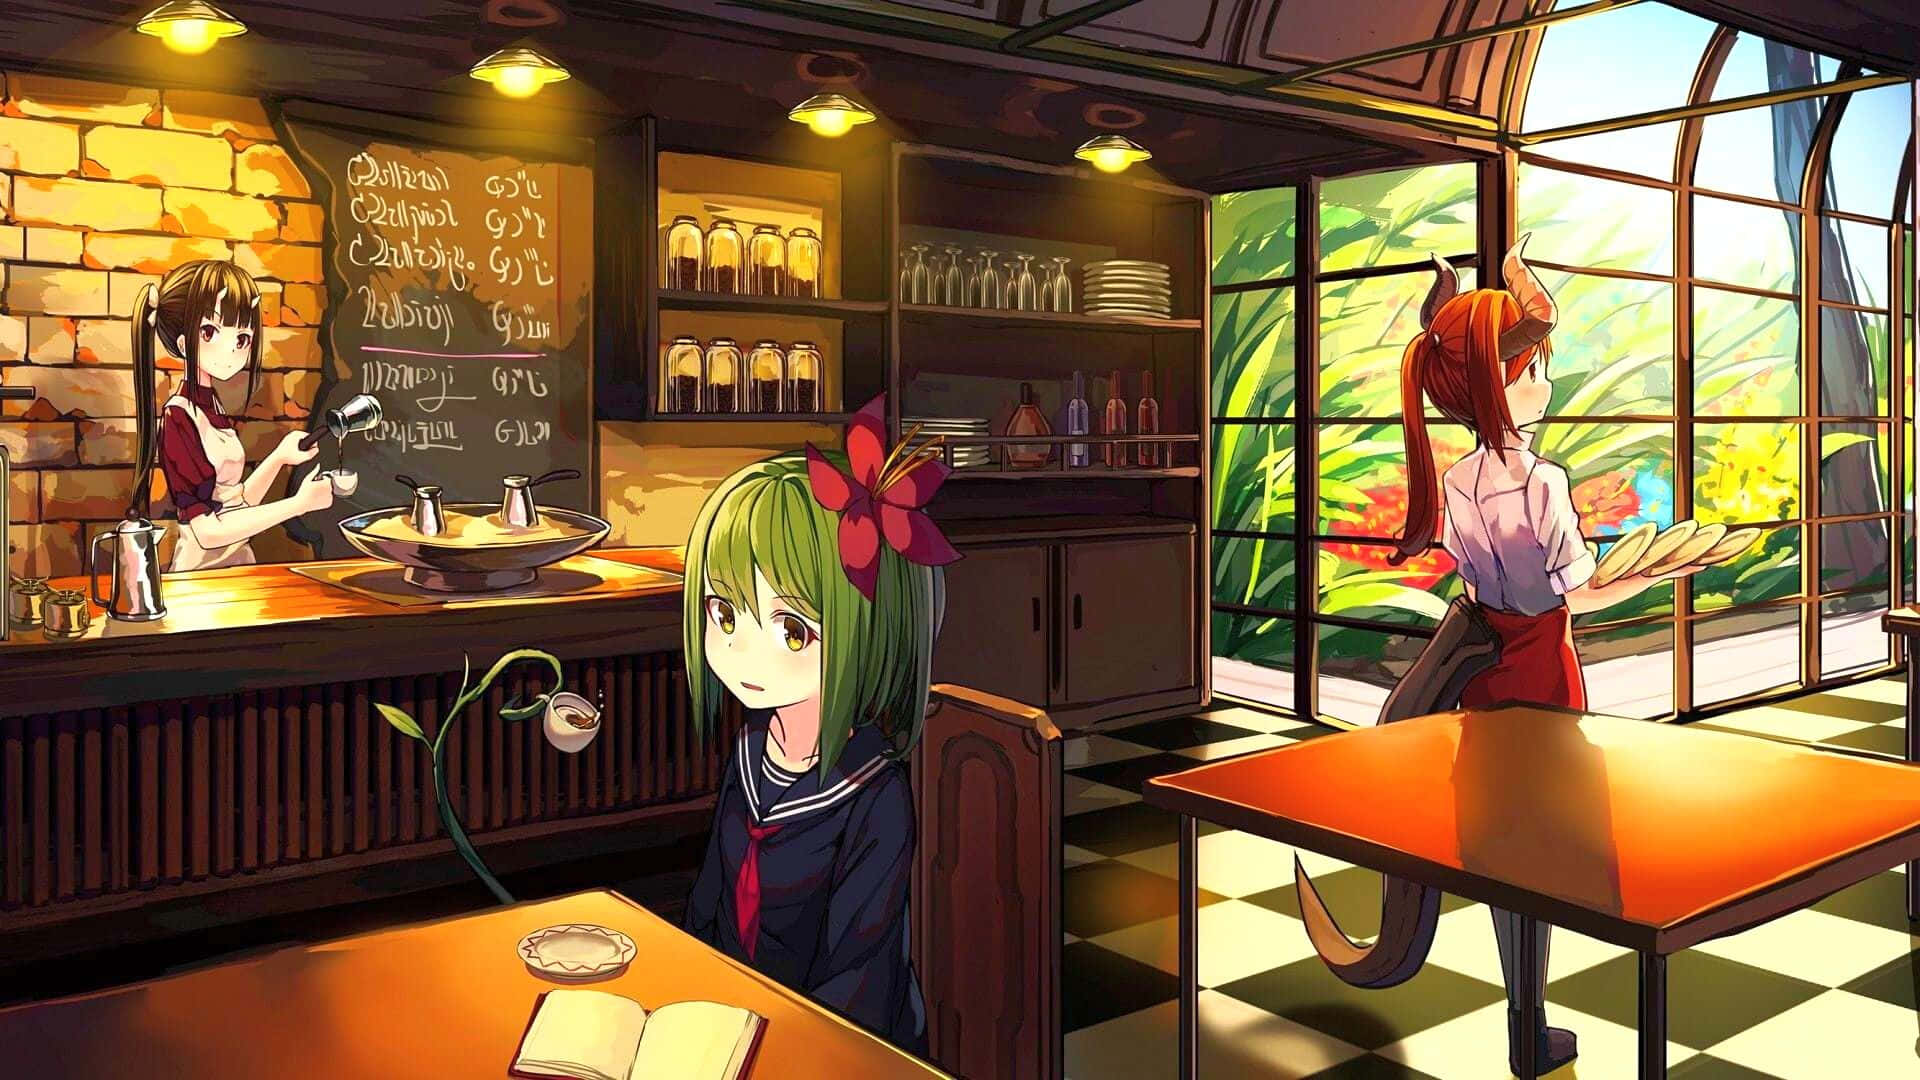 Anime Cafe Background 1920 X 1080 Background